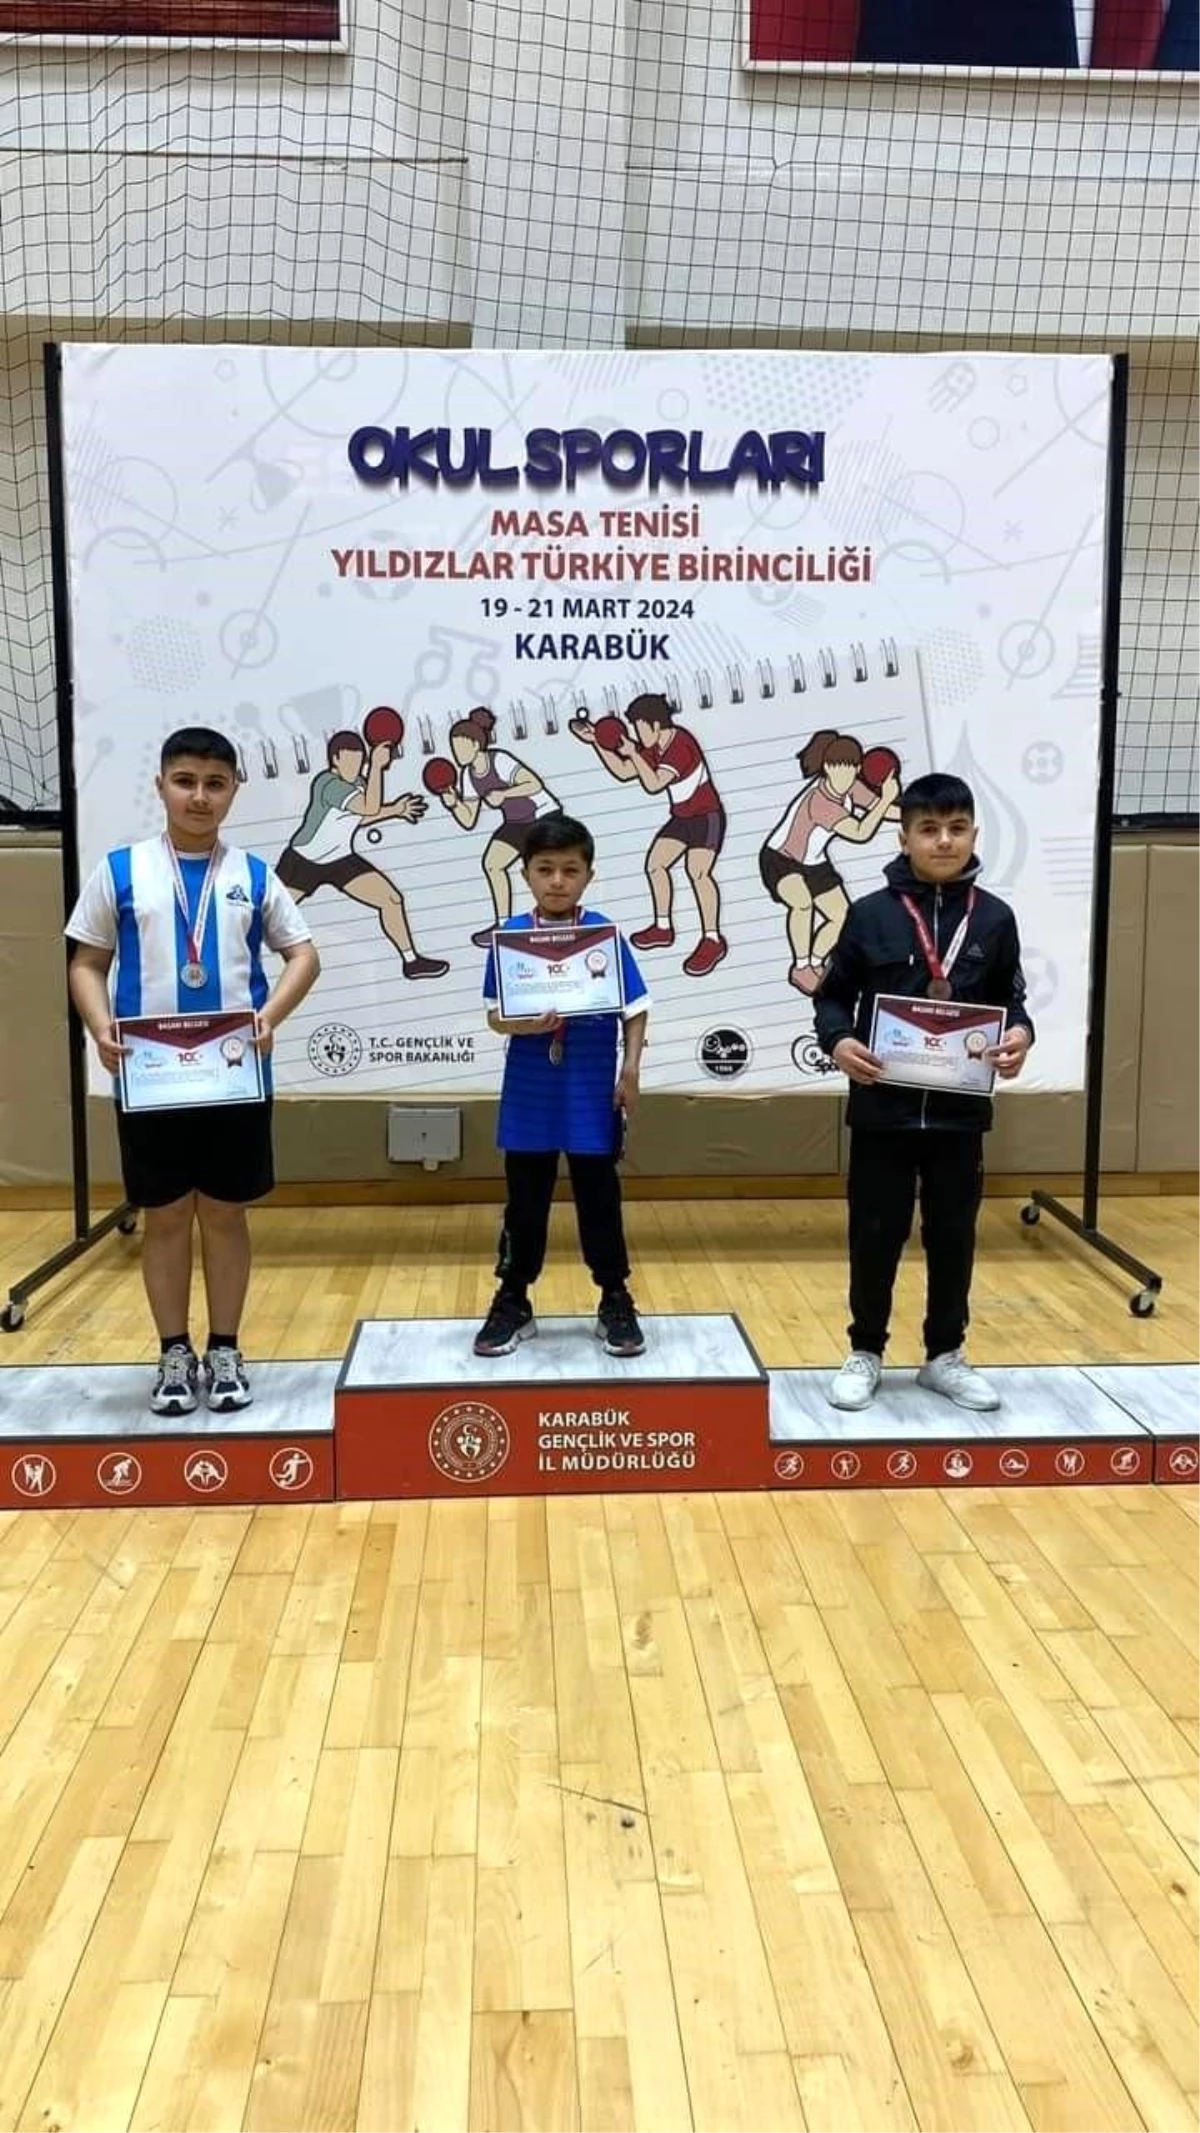 Güroymaklı Ahmet Yasin Aydemir, Okul Sporları Masa Tenisi Yıldızlar Türkiye Birincisi